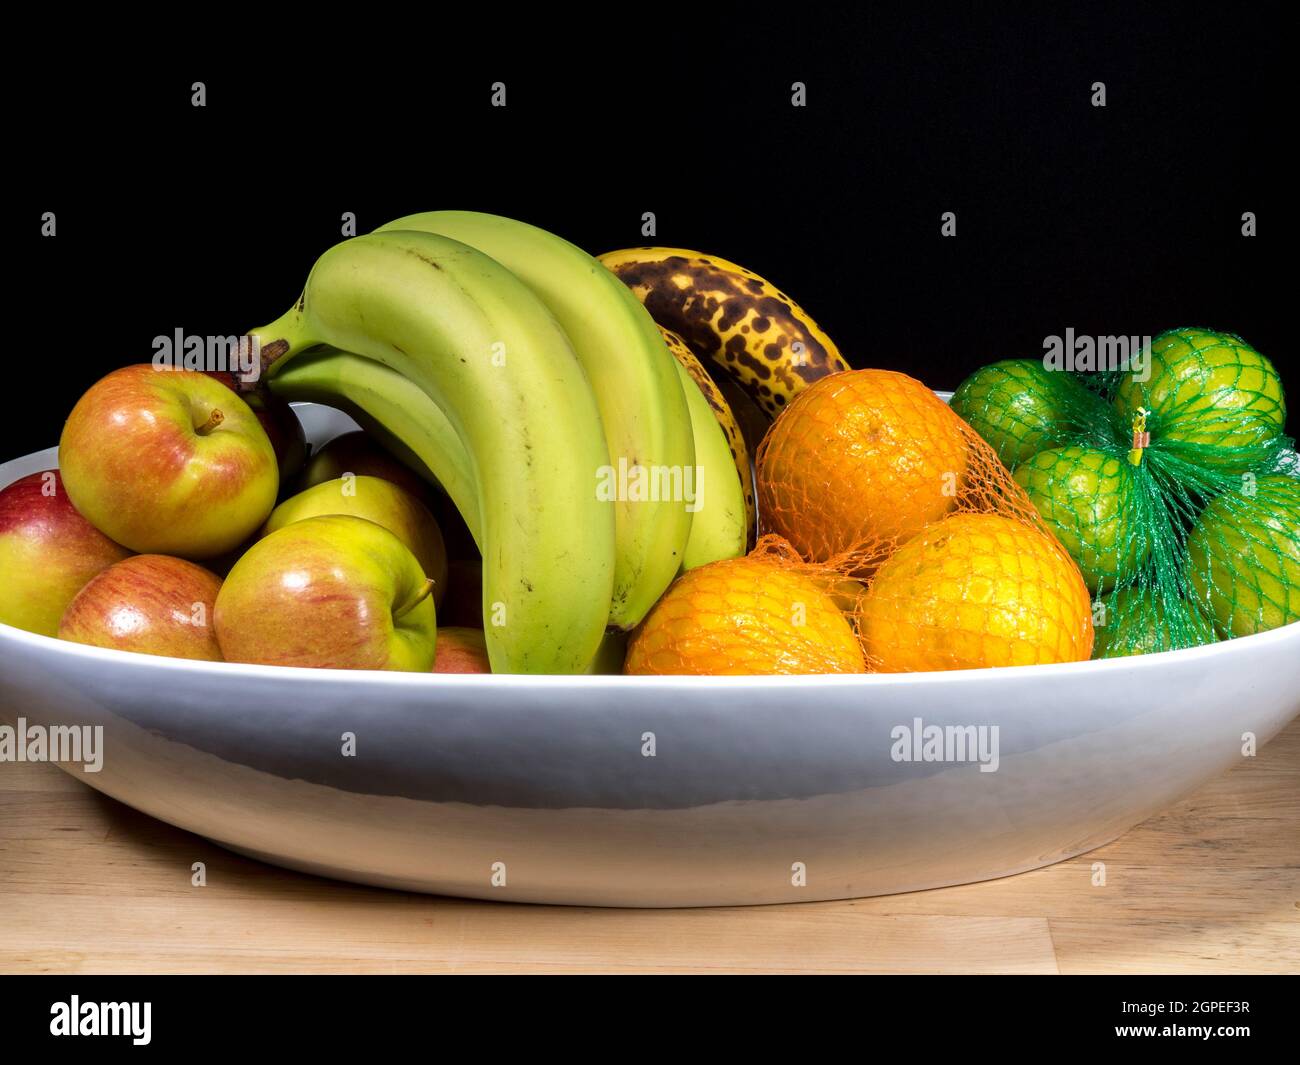 Sacchetti di banana immagini e fotografie stock ad alta risoluzione - Alamy